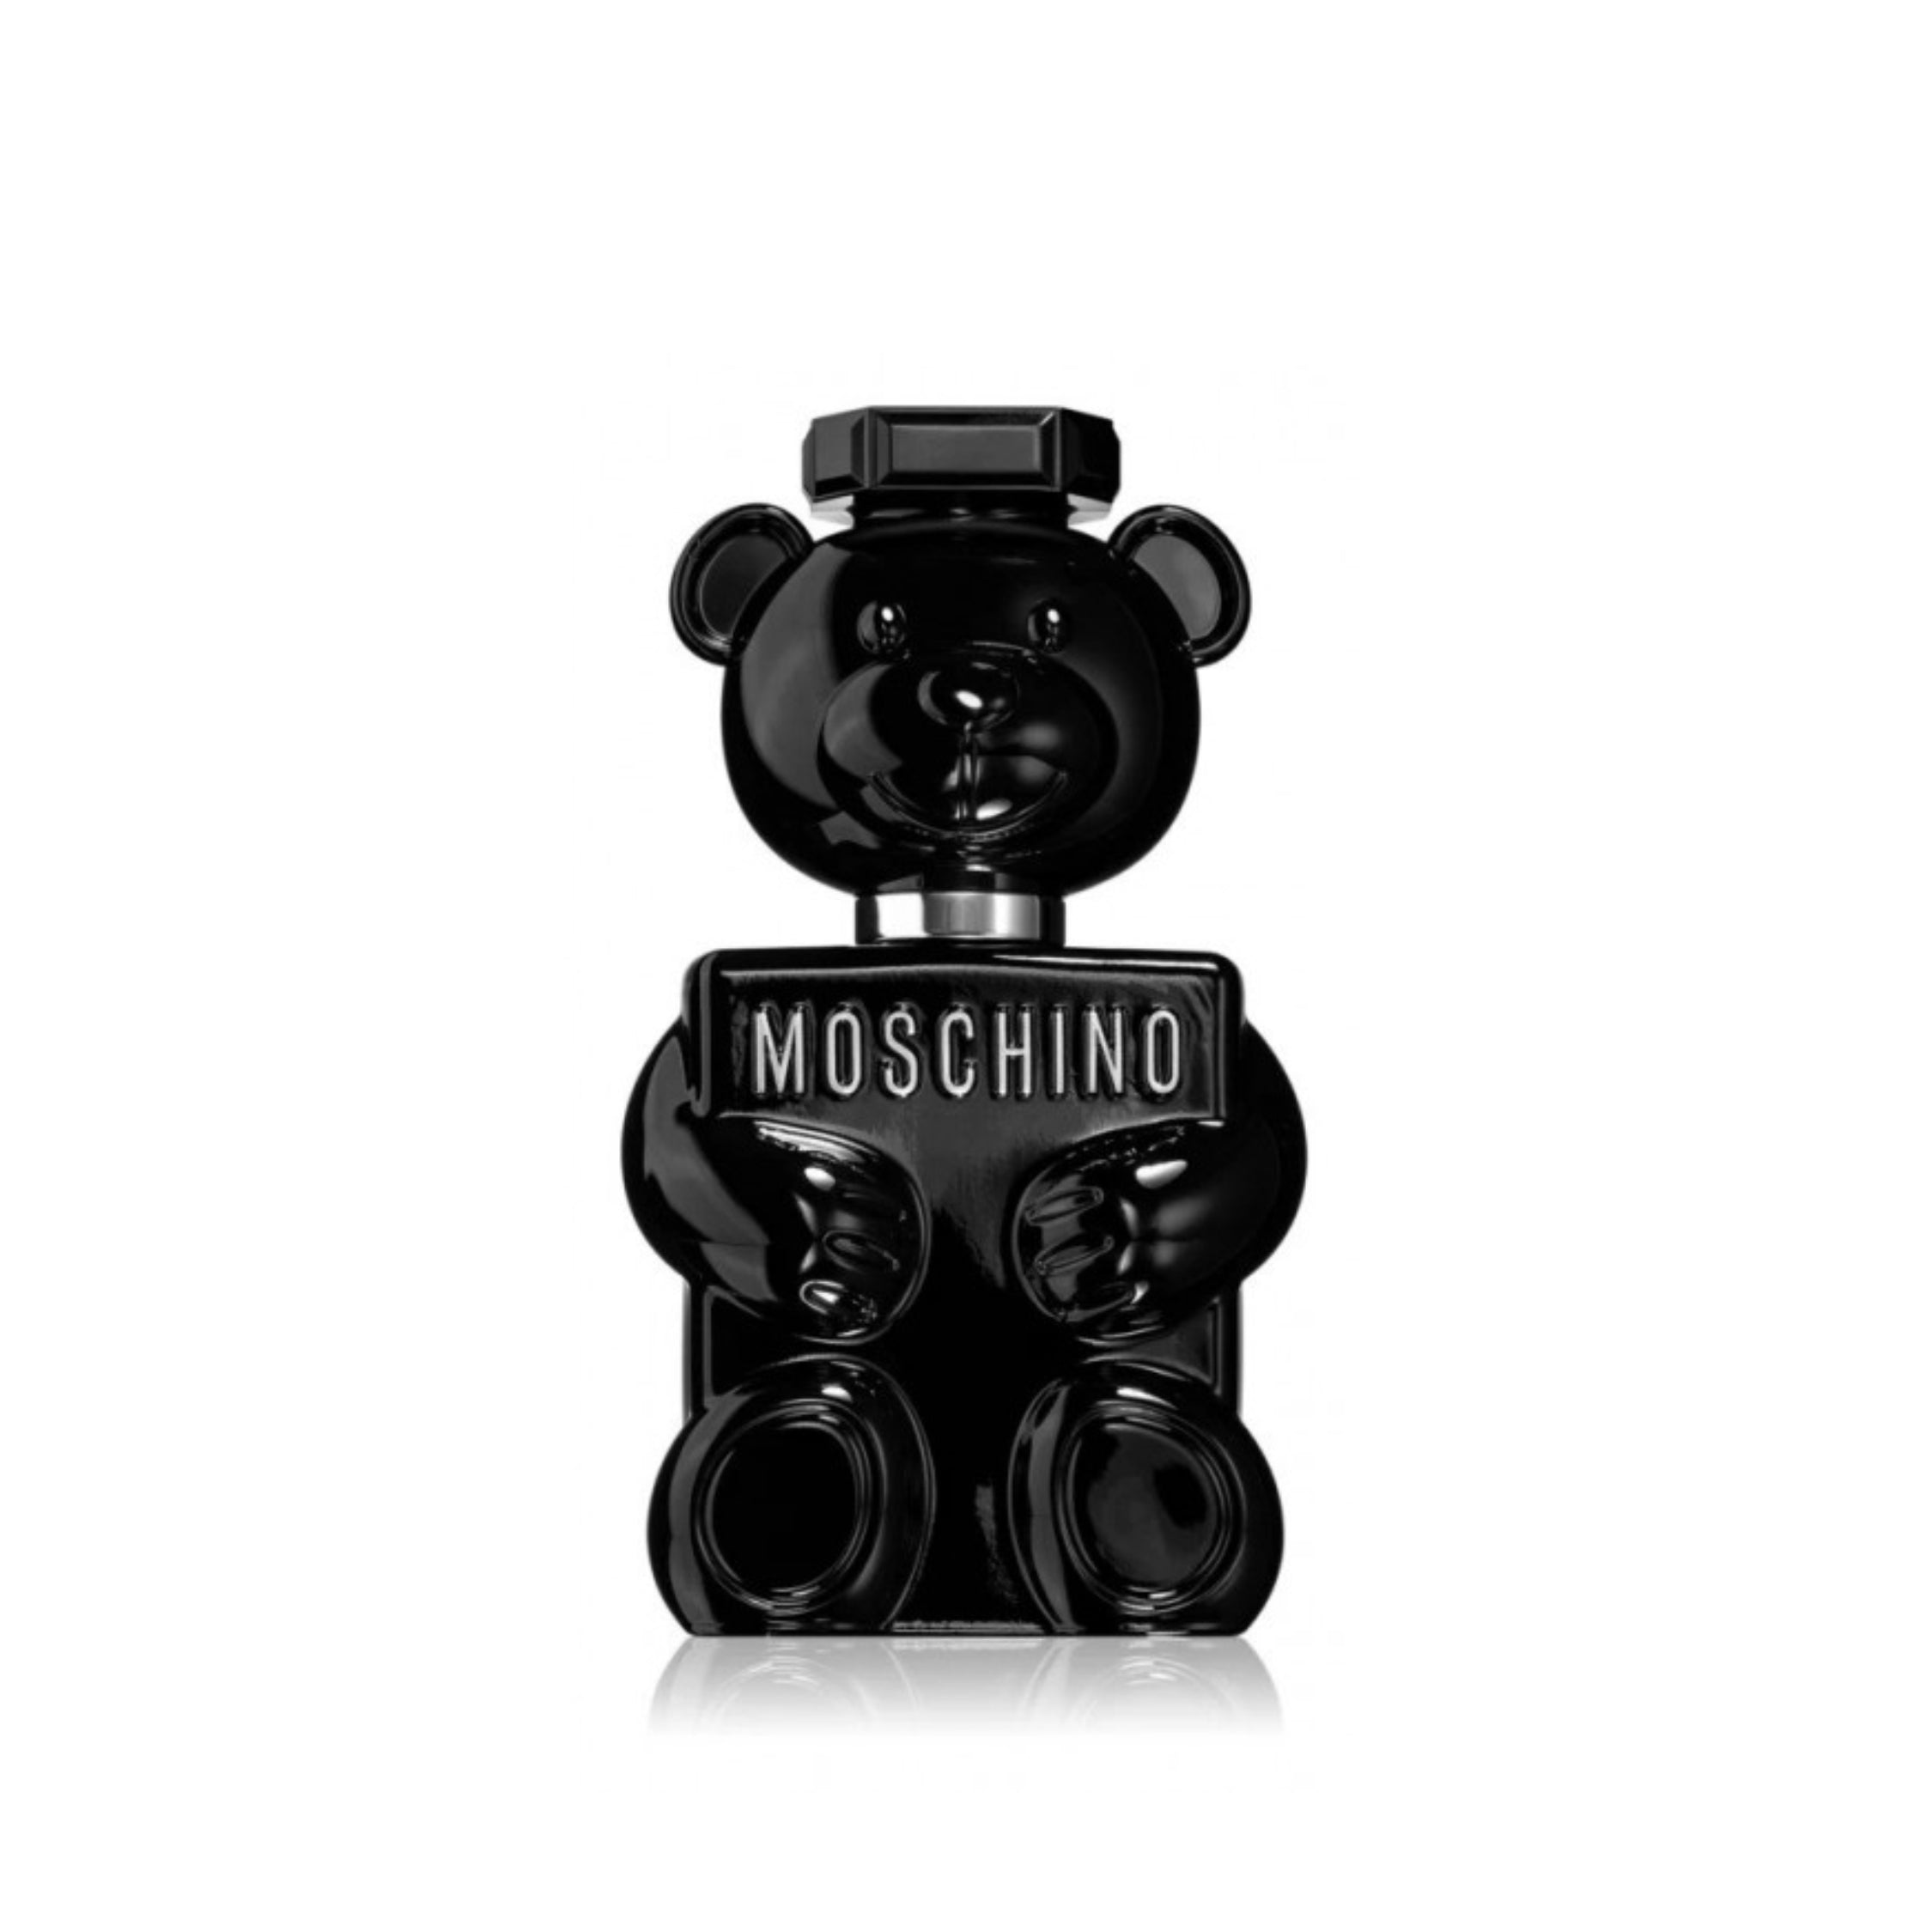 Moschino - Toy Boy - Miniatura - Eau de Parfum (STAR)